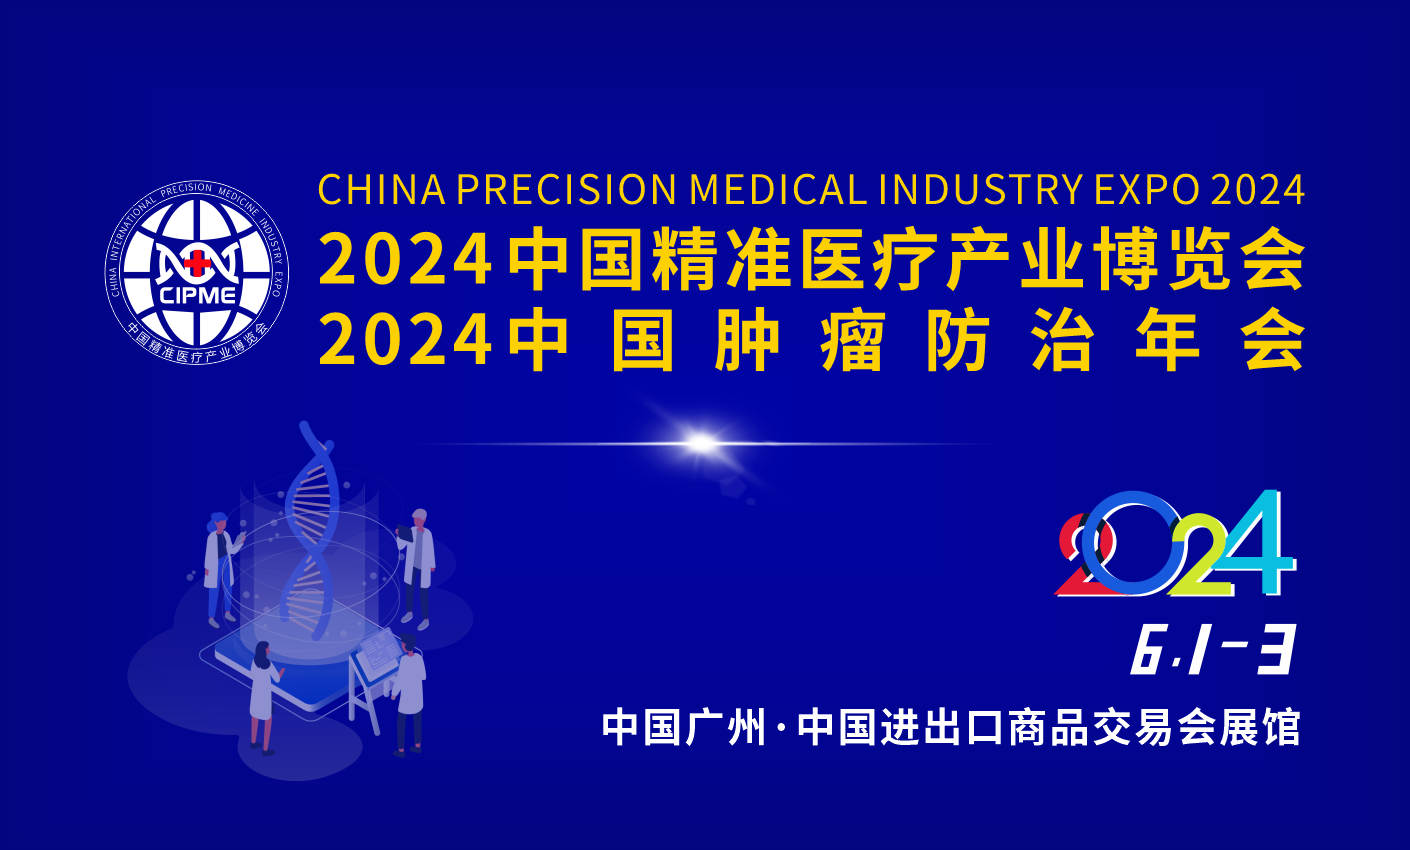 2024中国精准医学大会暨精准医疗产业博览会